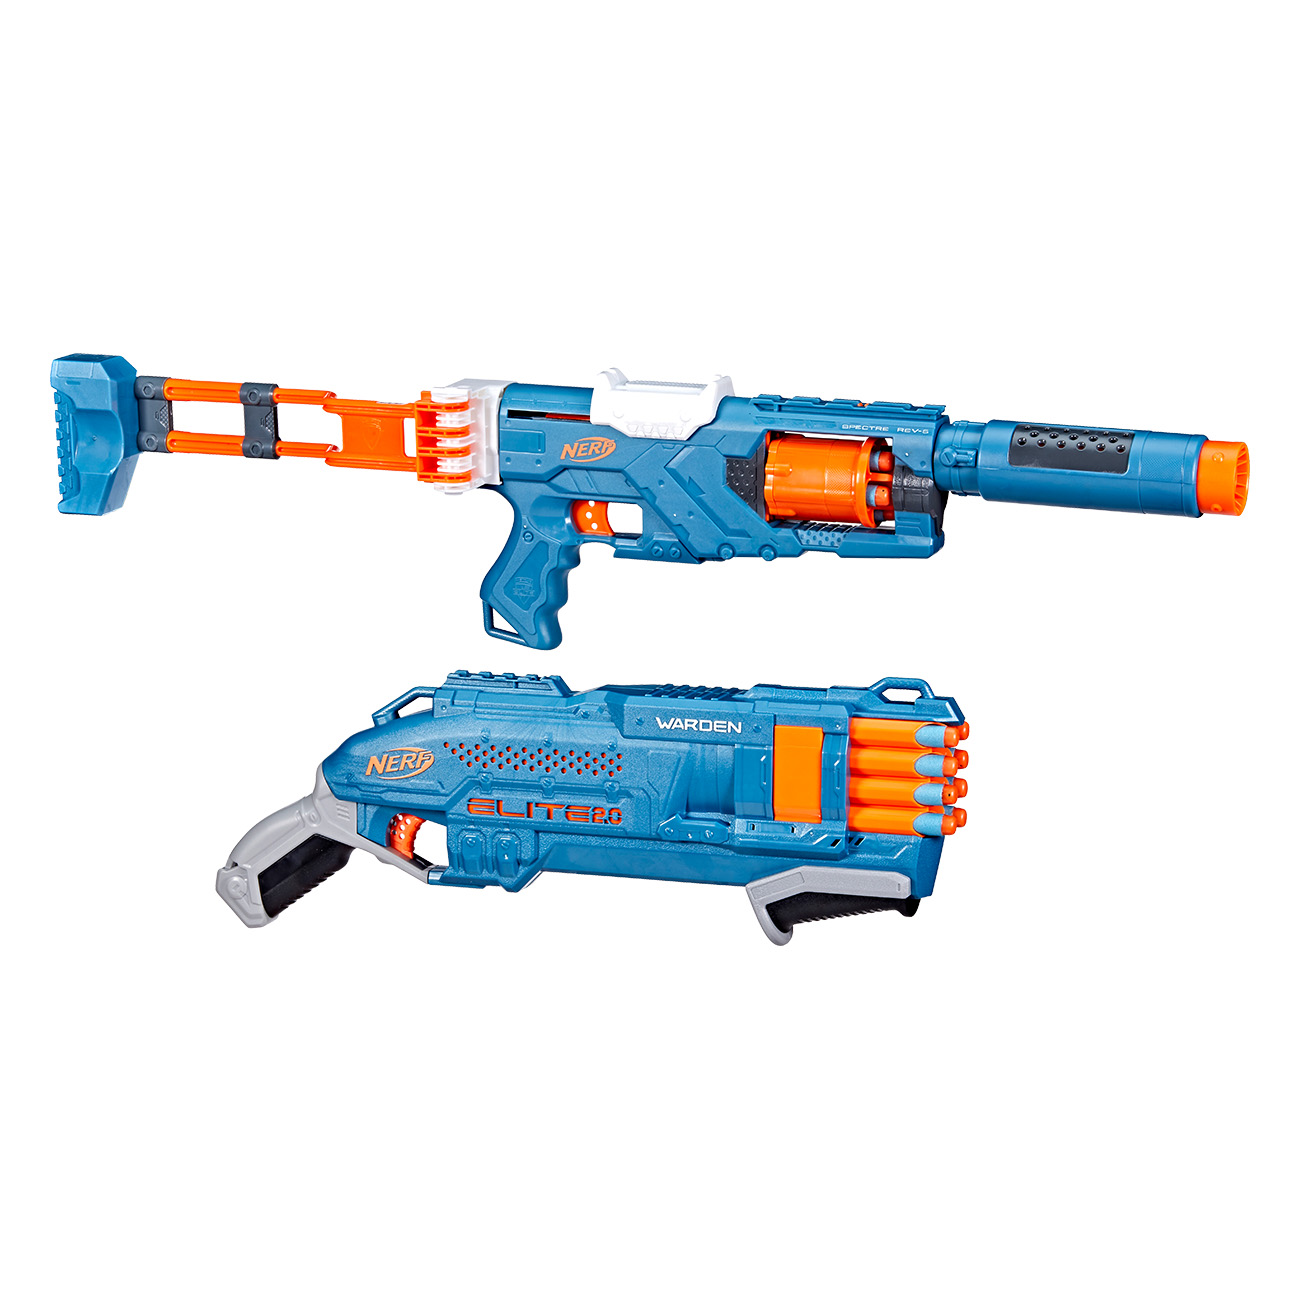 NERF Elite 2.0 Double Defense Pack Spielzeugwaffen